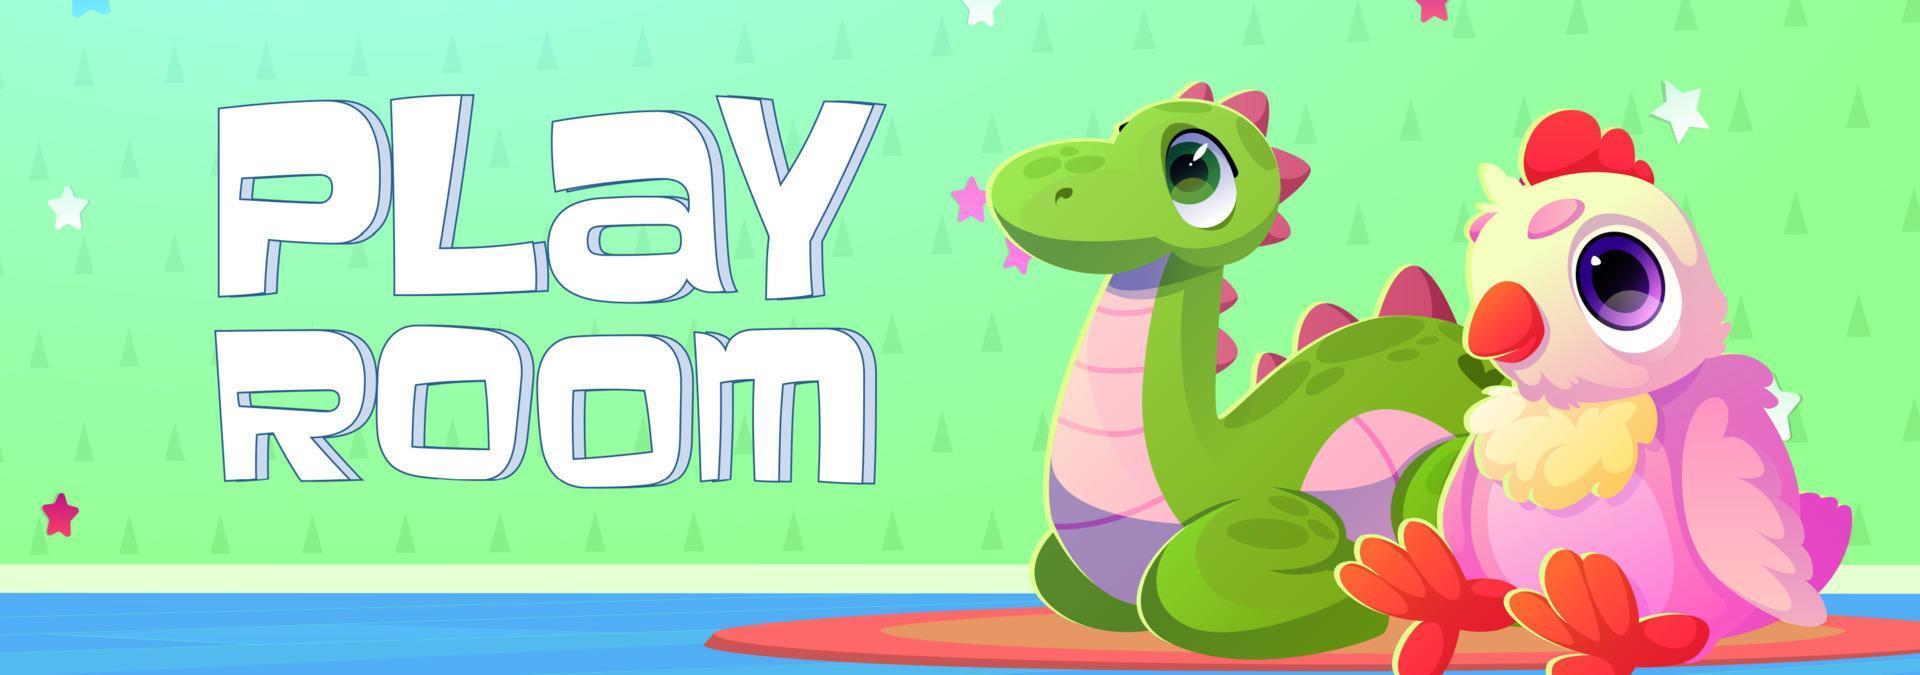 banner de dibujos animados de sala de juegos con lindos juguetes de peluche para niños vector